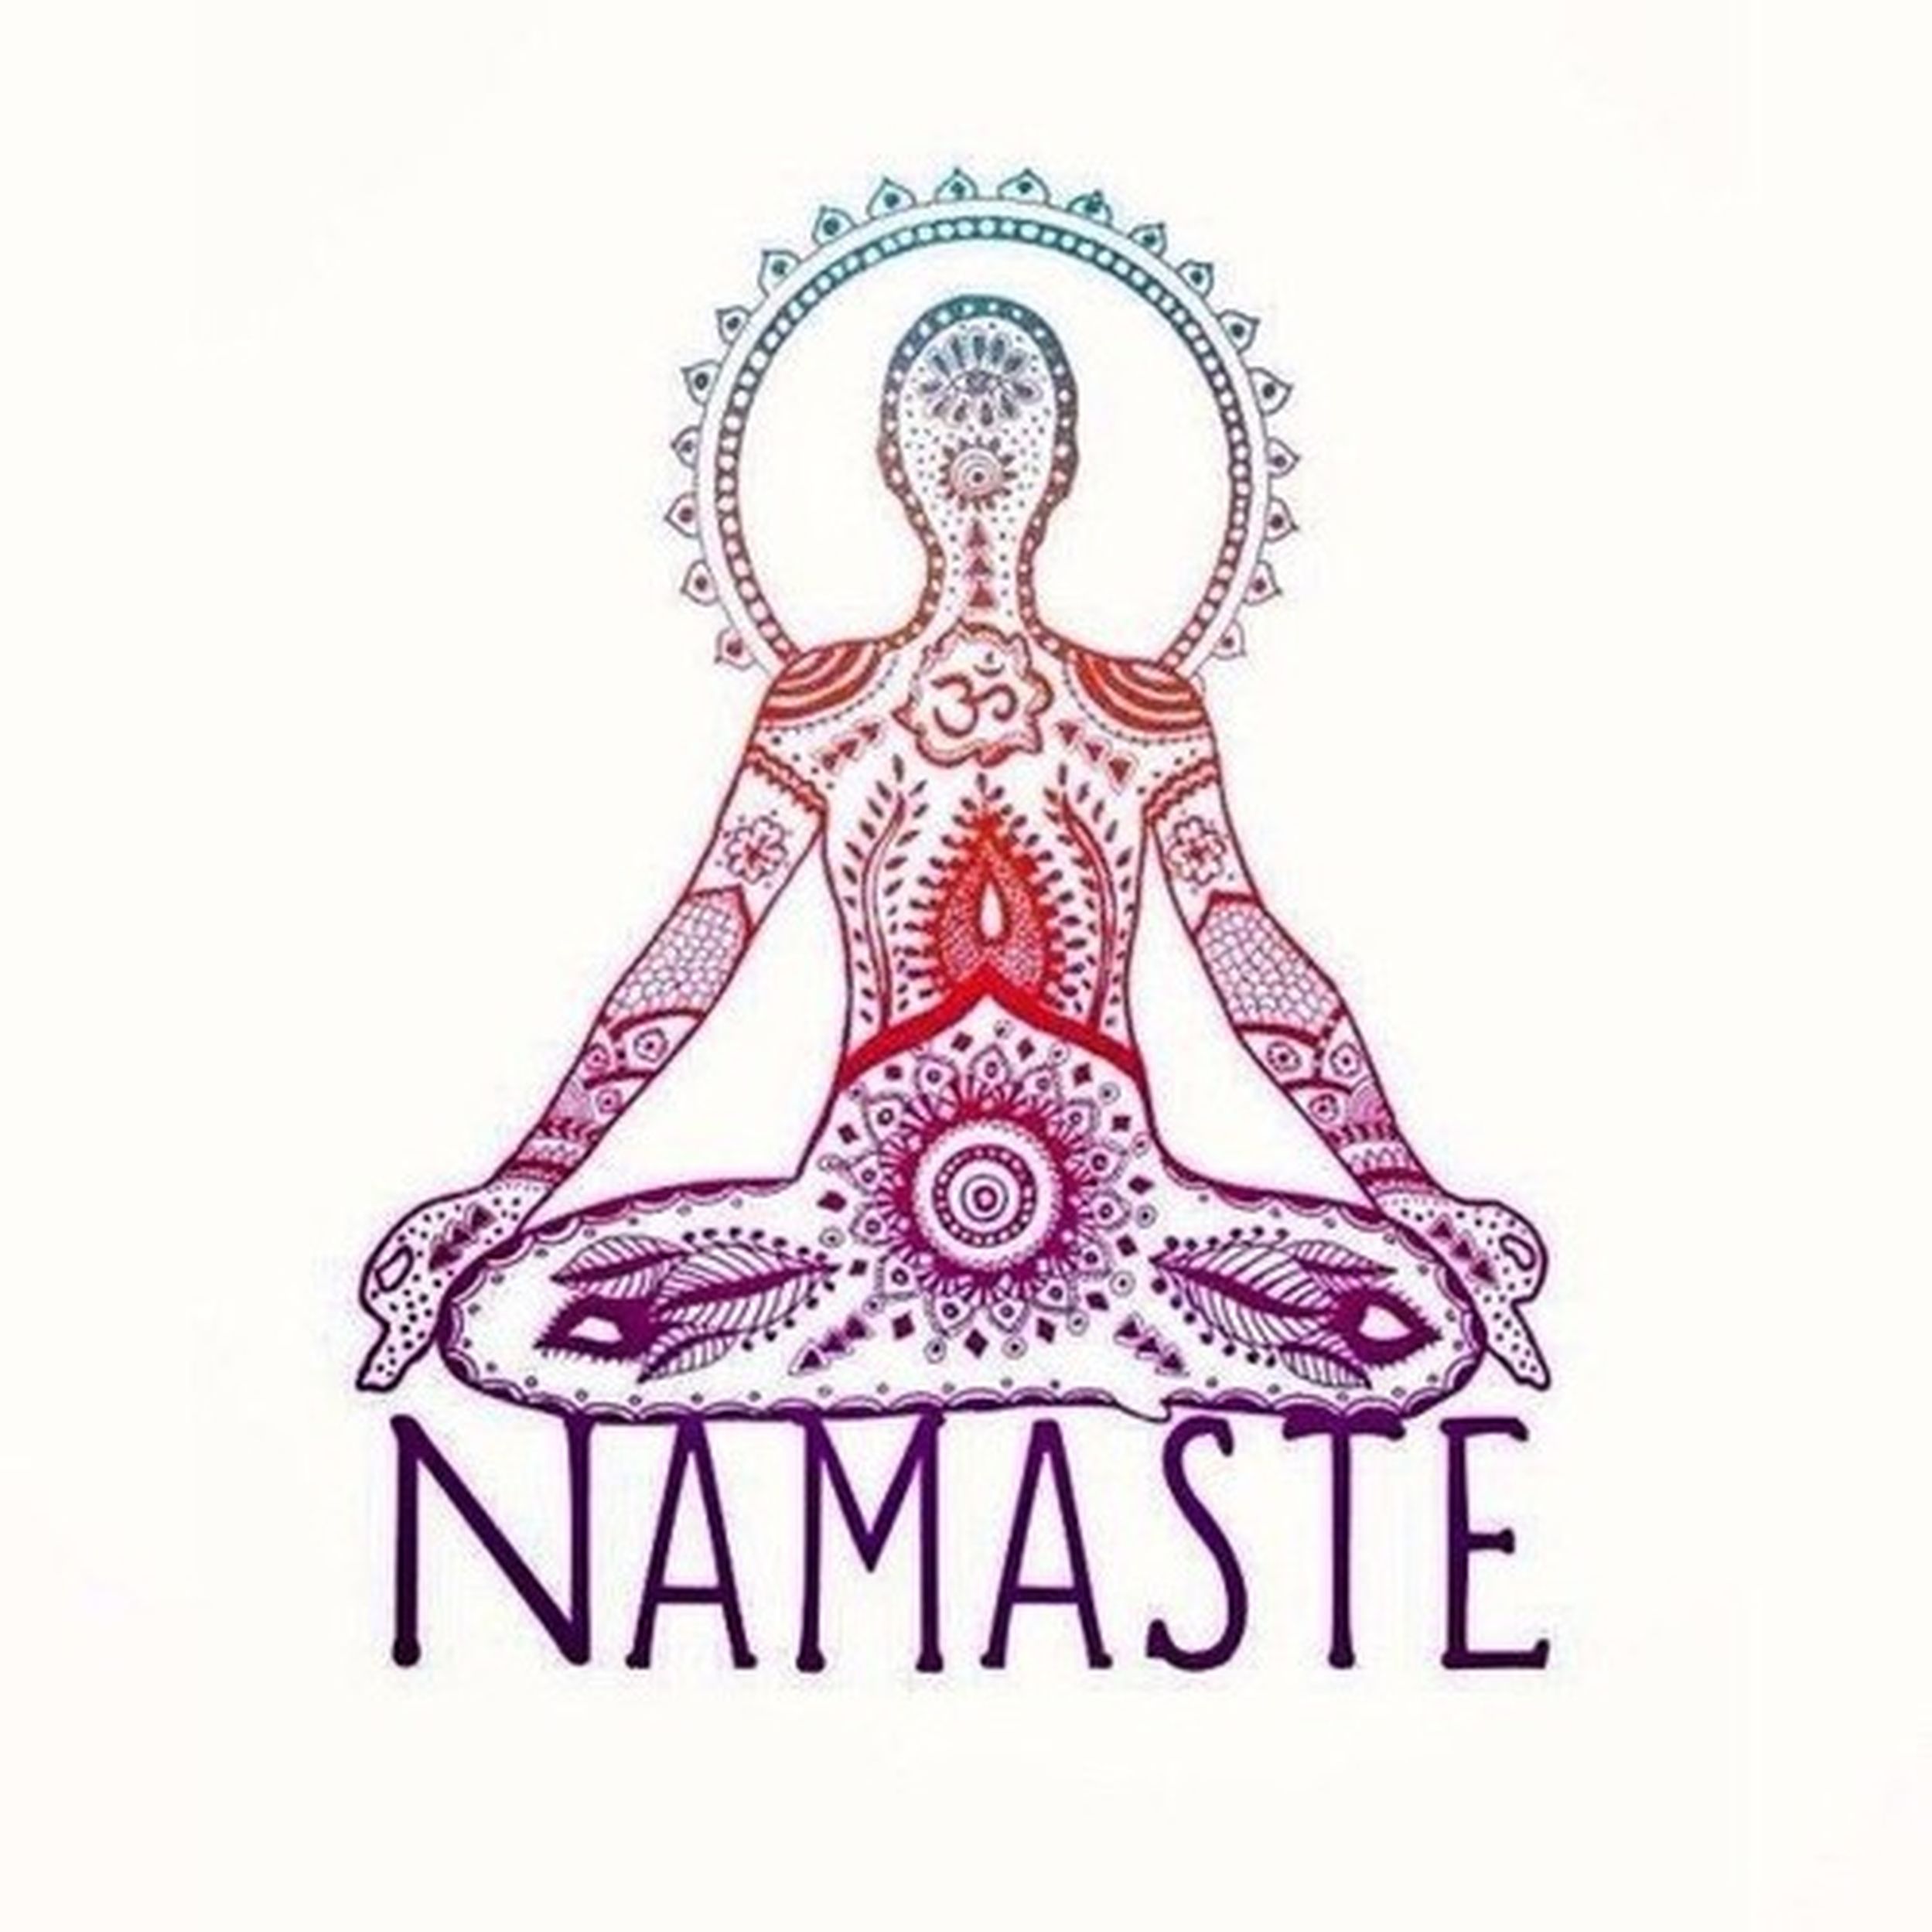 Namaste перевод. Намасте йога. Йога иллюстрации. Символ медитации. Знак Намасте.